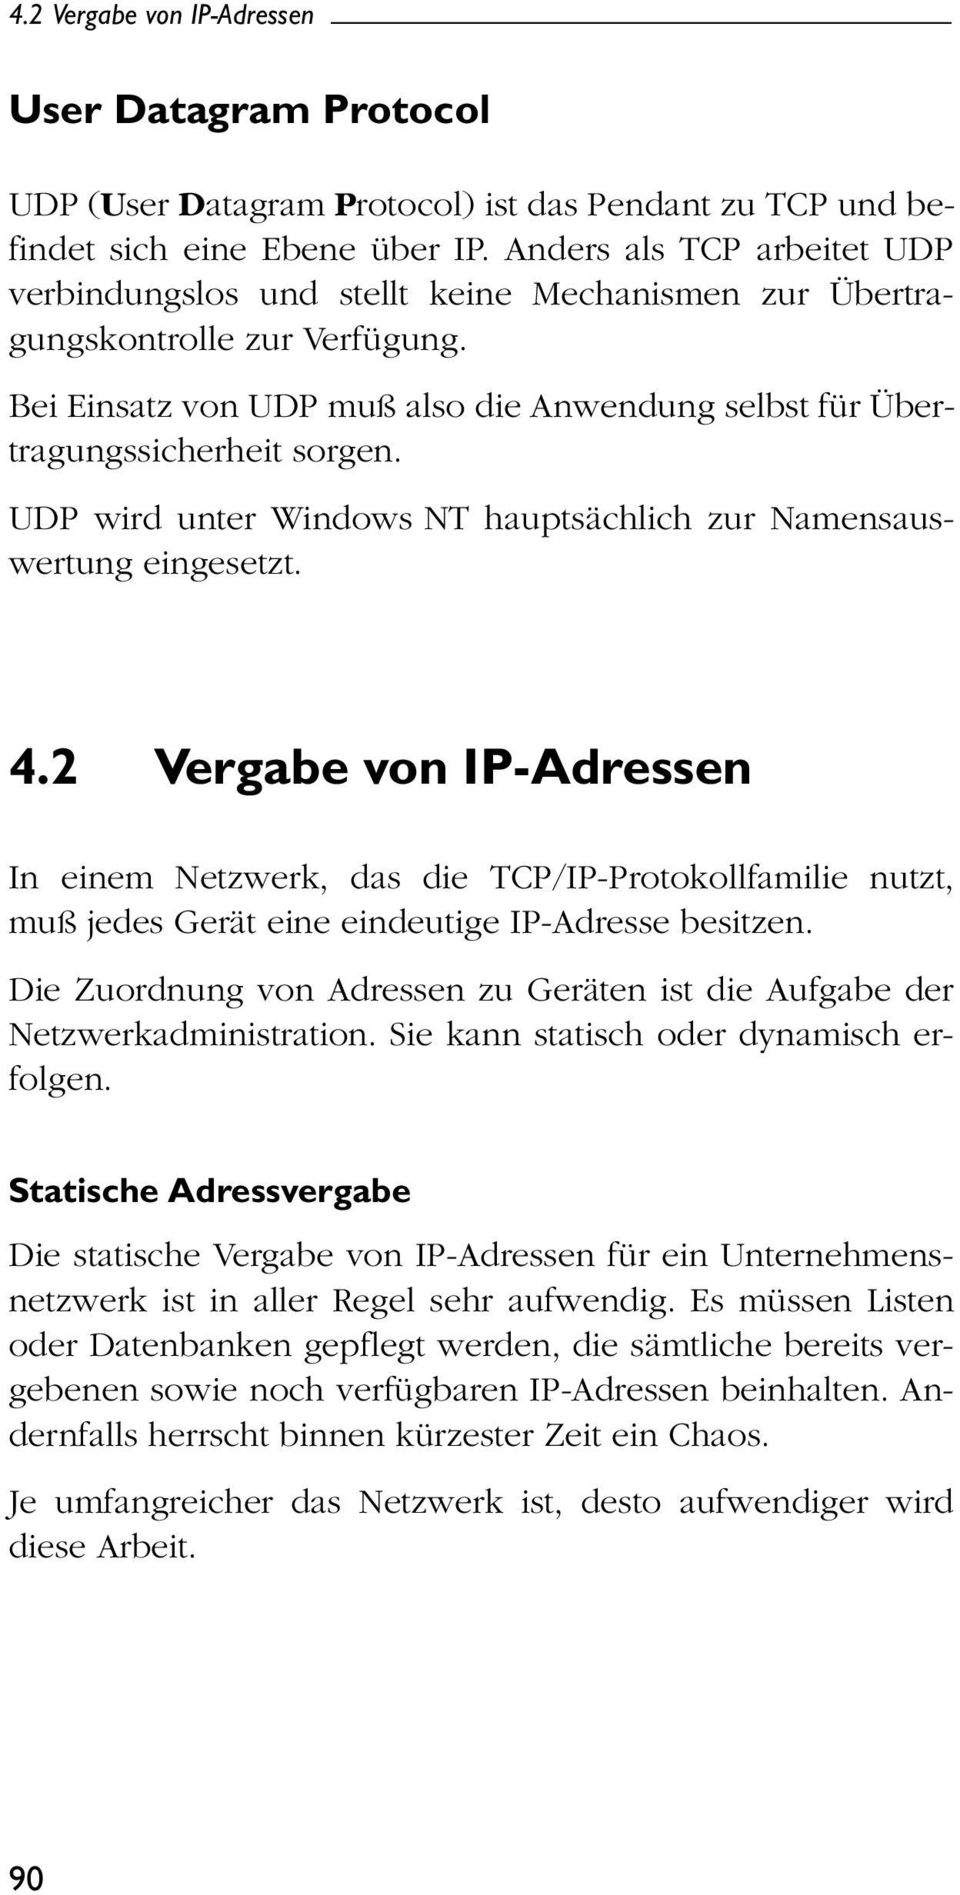 UDP wird unter Windows NT hauptsächlich zur Namensauswertung eingesetzt. 4.